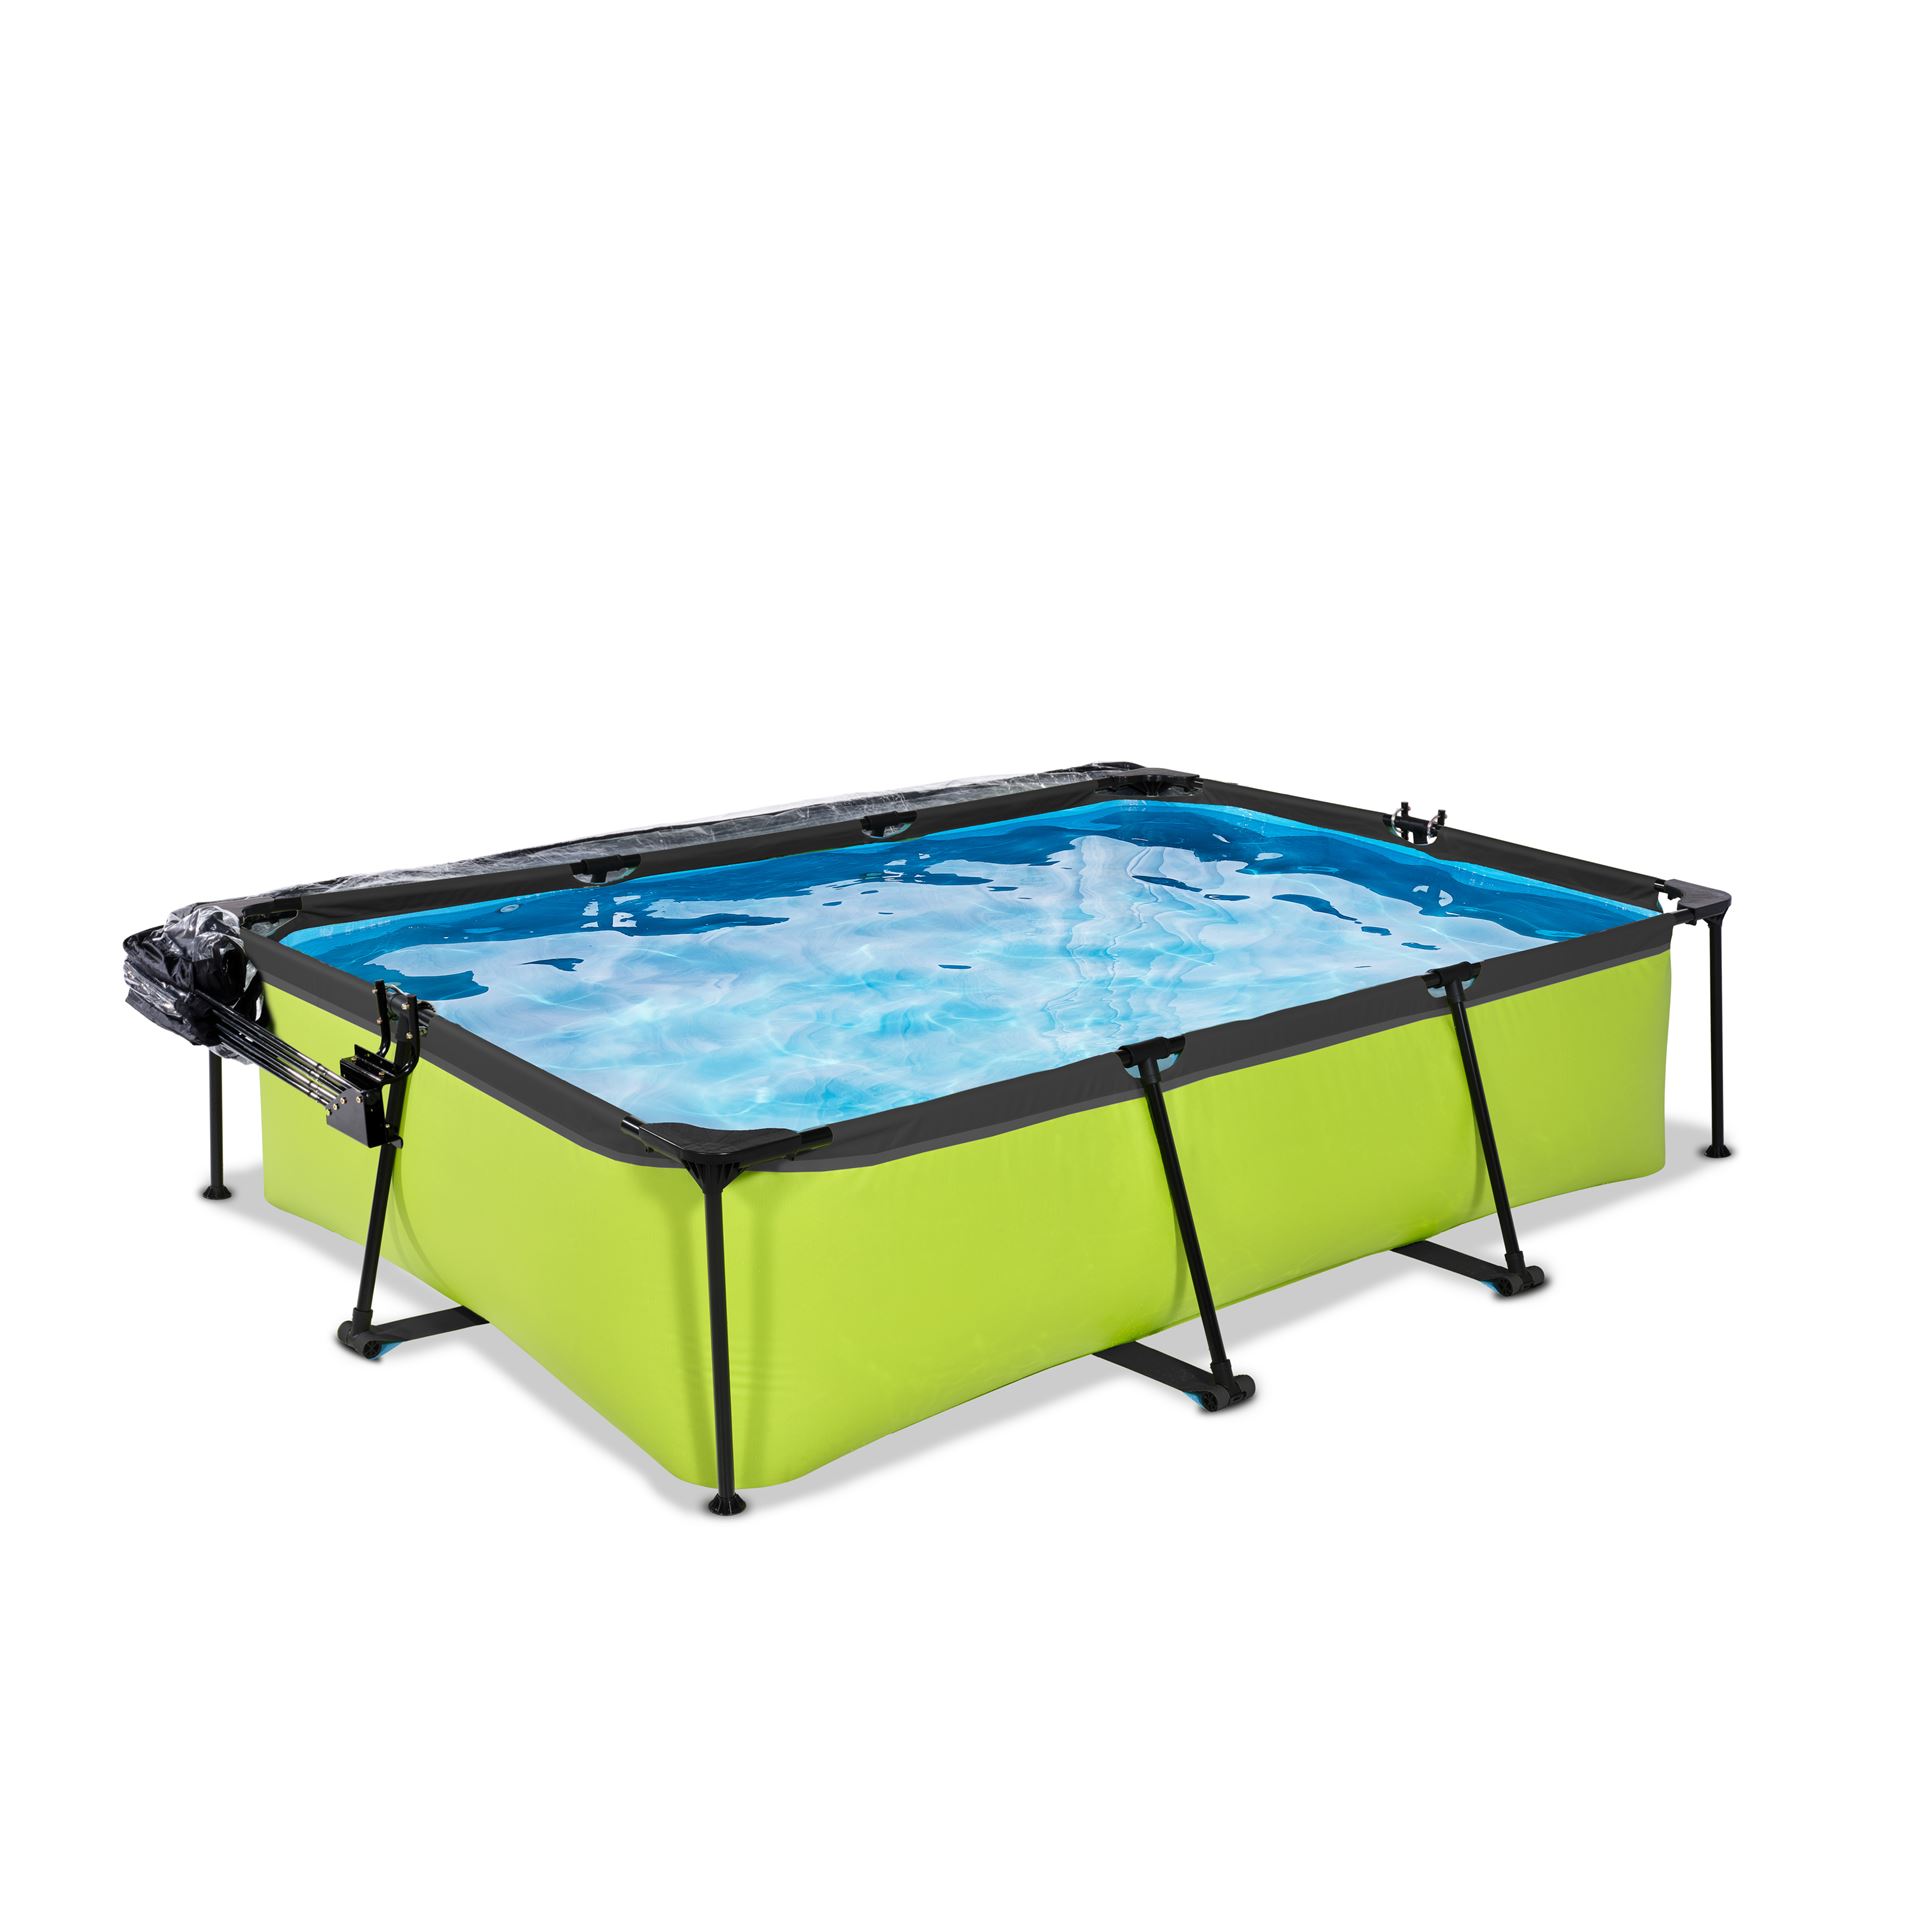 EXIT-Lime-zwembad-300x200x65cm-met-filterpomp-en-overkapping-groen